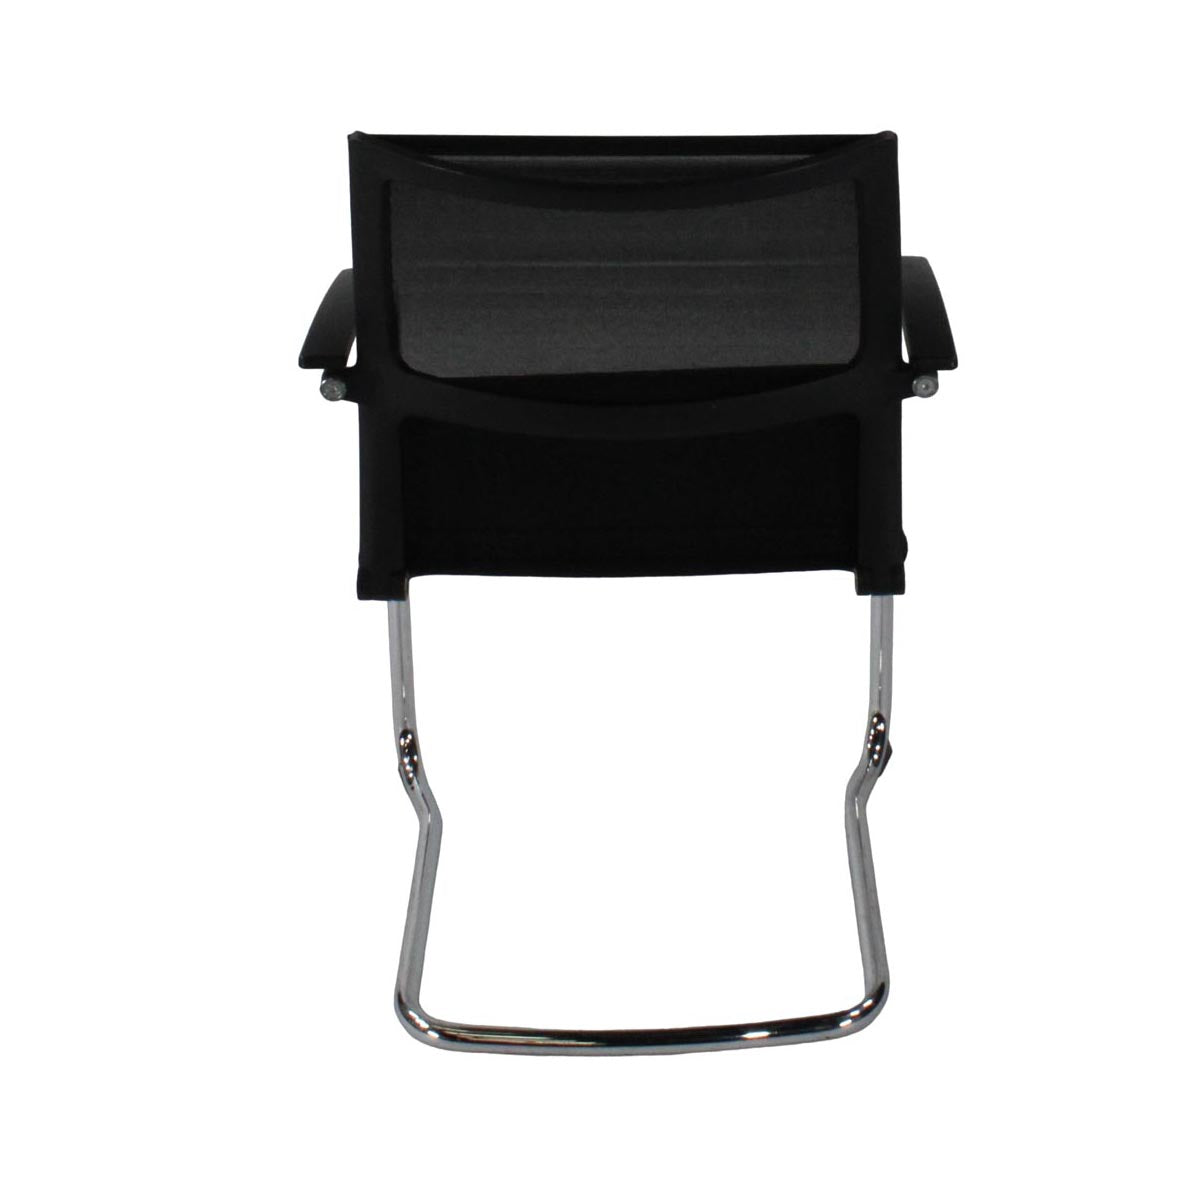 Sedus : Chaise cantilever ouverte avec dossier en maille/cadre en aluminium en tissu noir - Remis à neuf